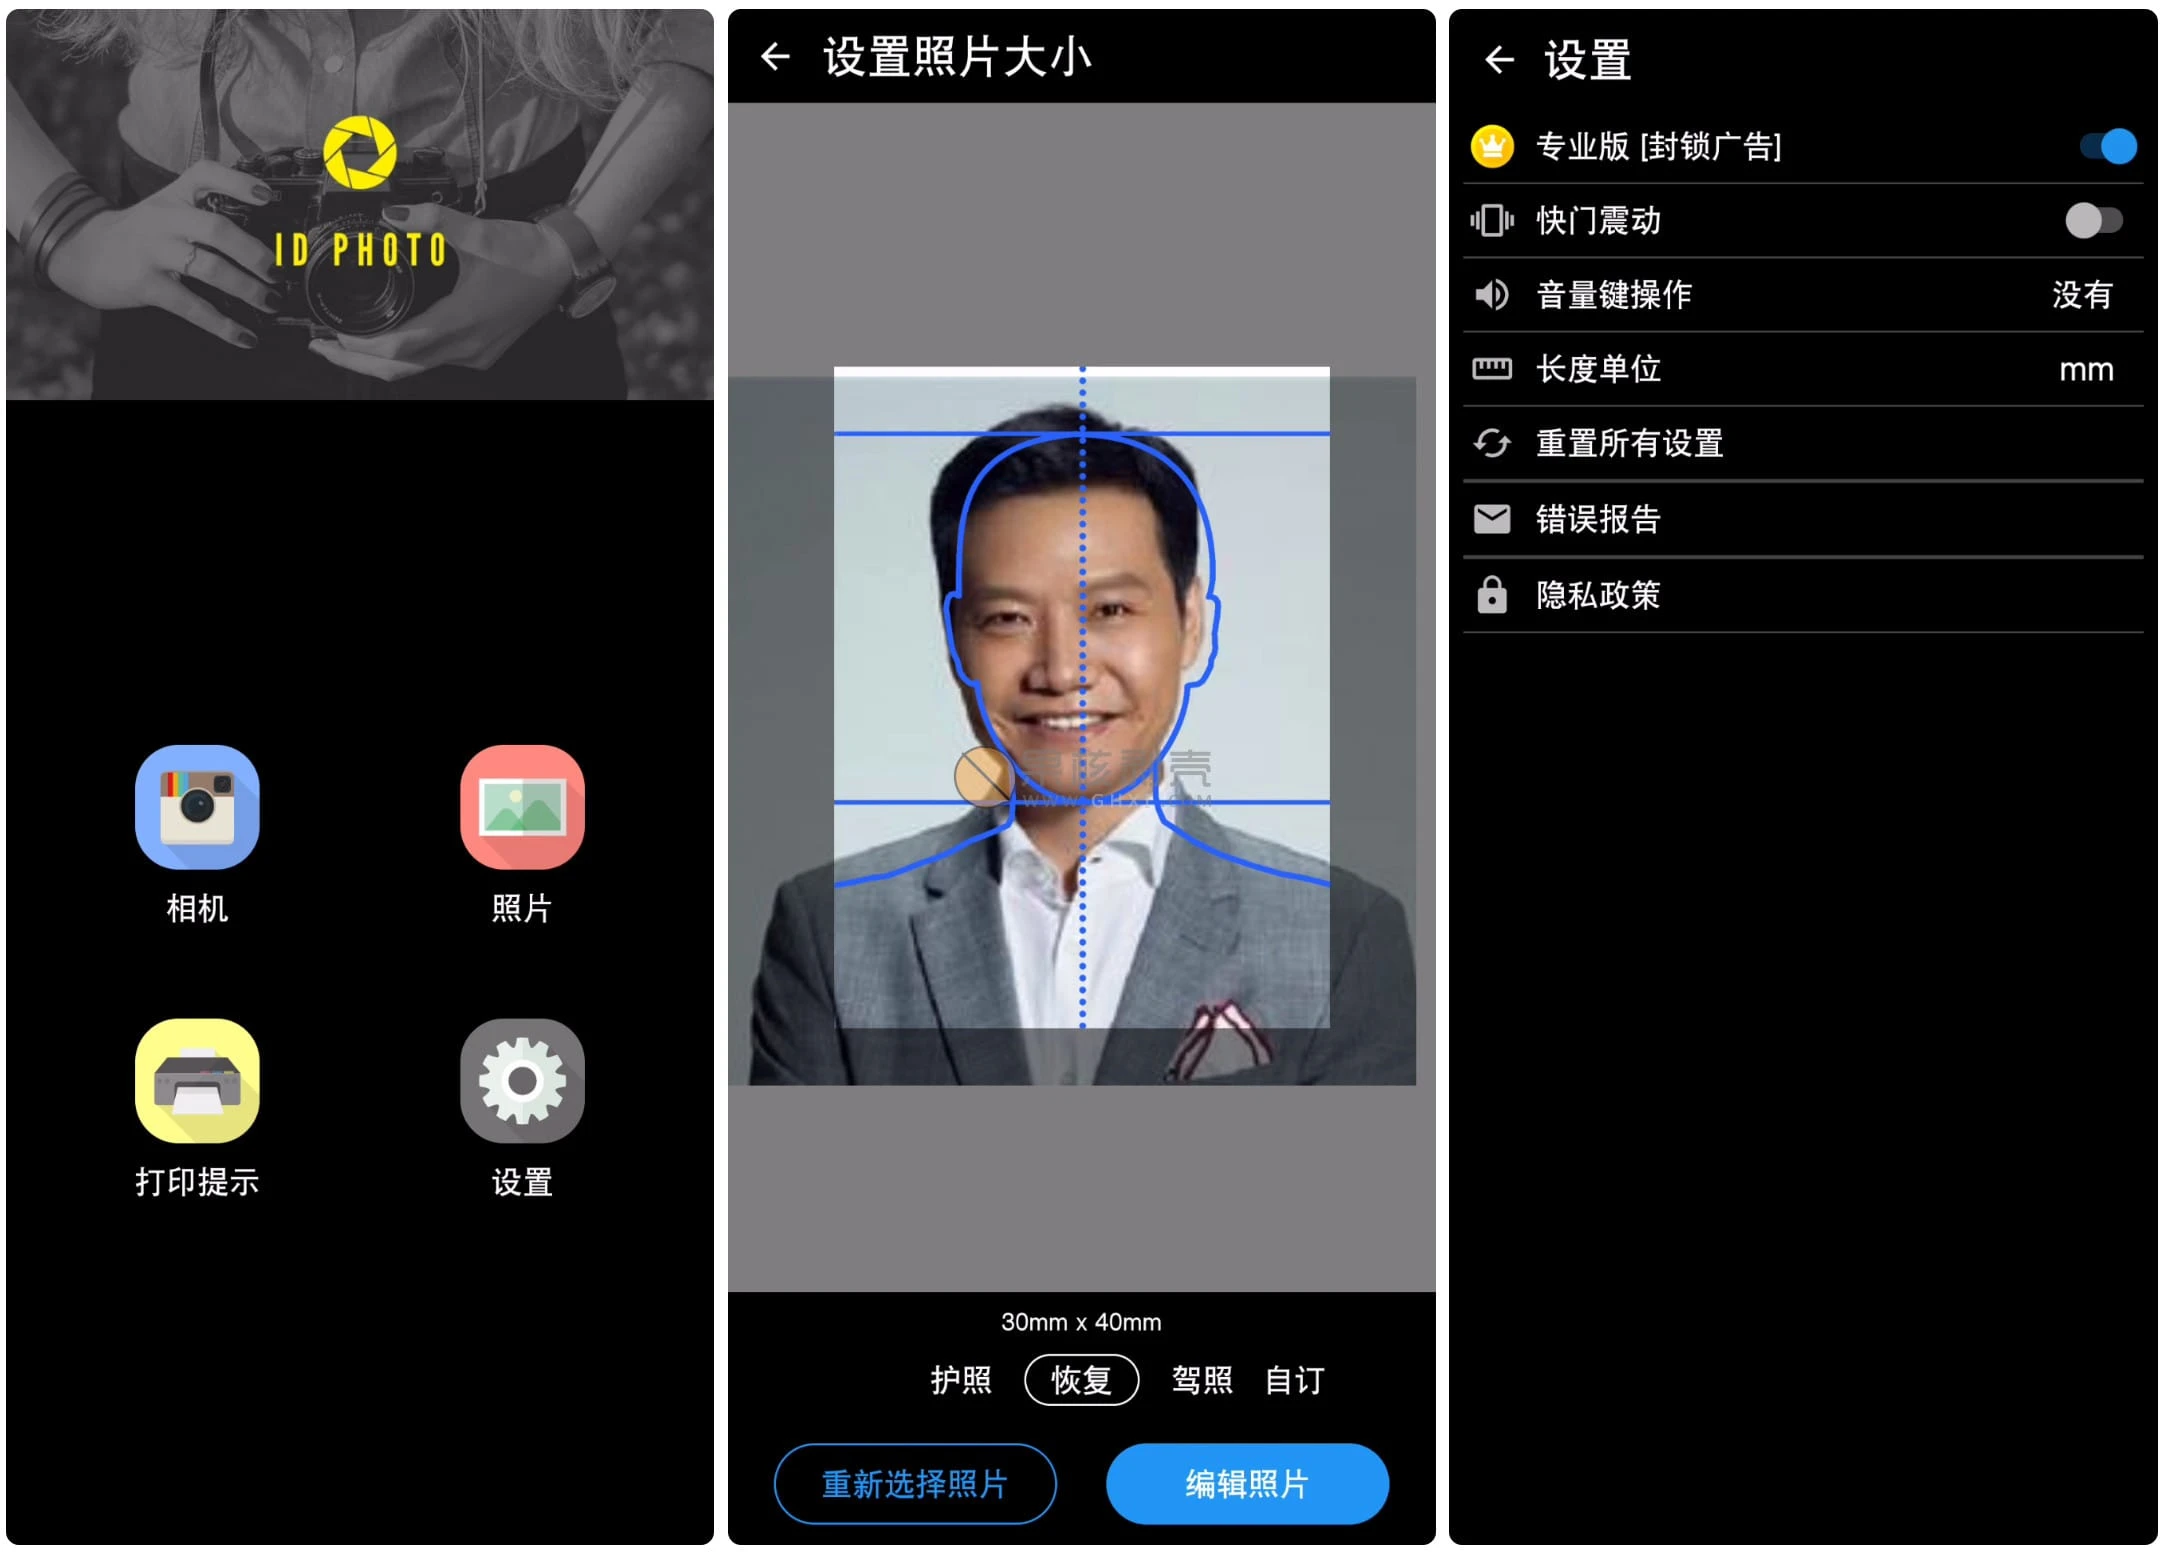 Android ID Photo(证件照片) v8.3.2 高级版